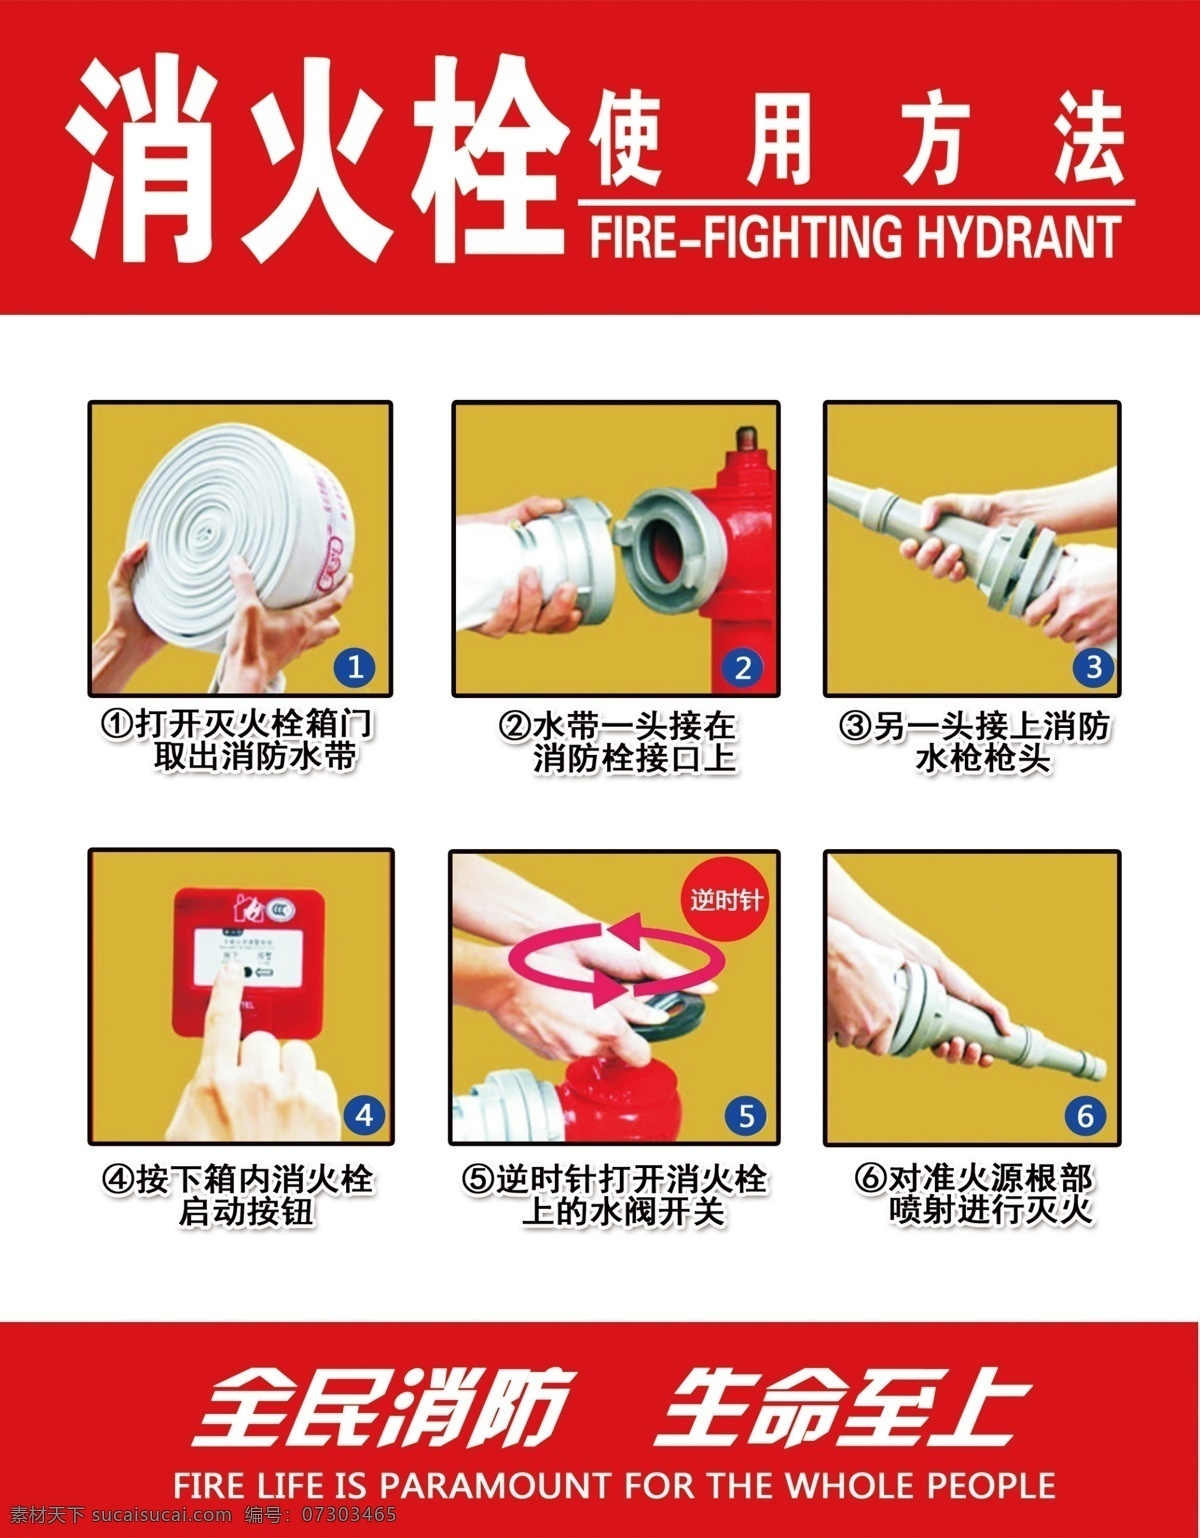 消防栓 使用方法 全民消防 消火图片 消火栓 生命至上 灭火栓